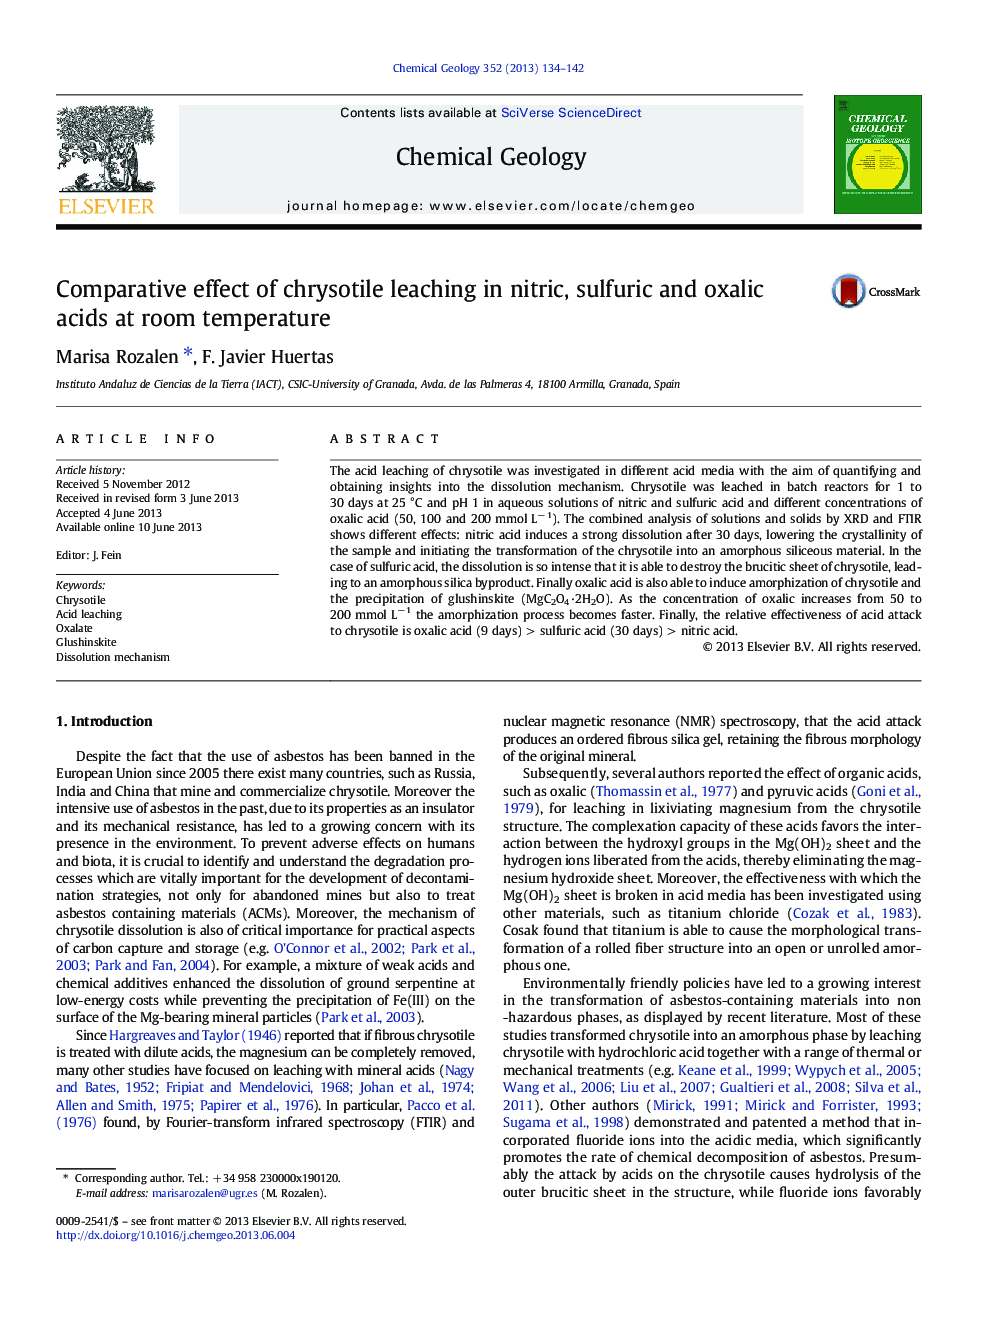 اثر تطبیقی ​​اشباع کریستوتیل در اسید نیتریک، سولفوریک و اگزالیک در دمای اتاق 